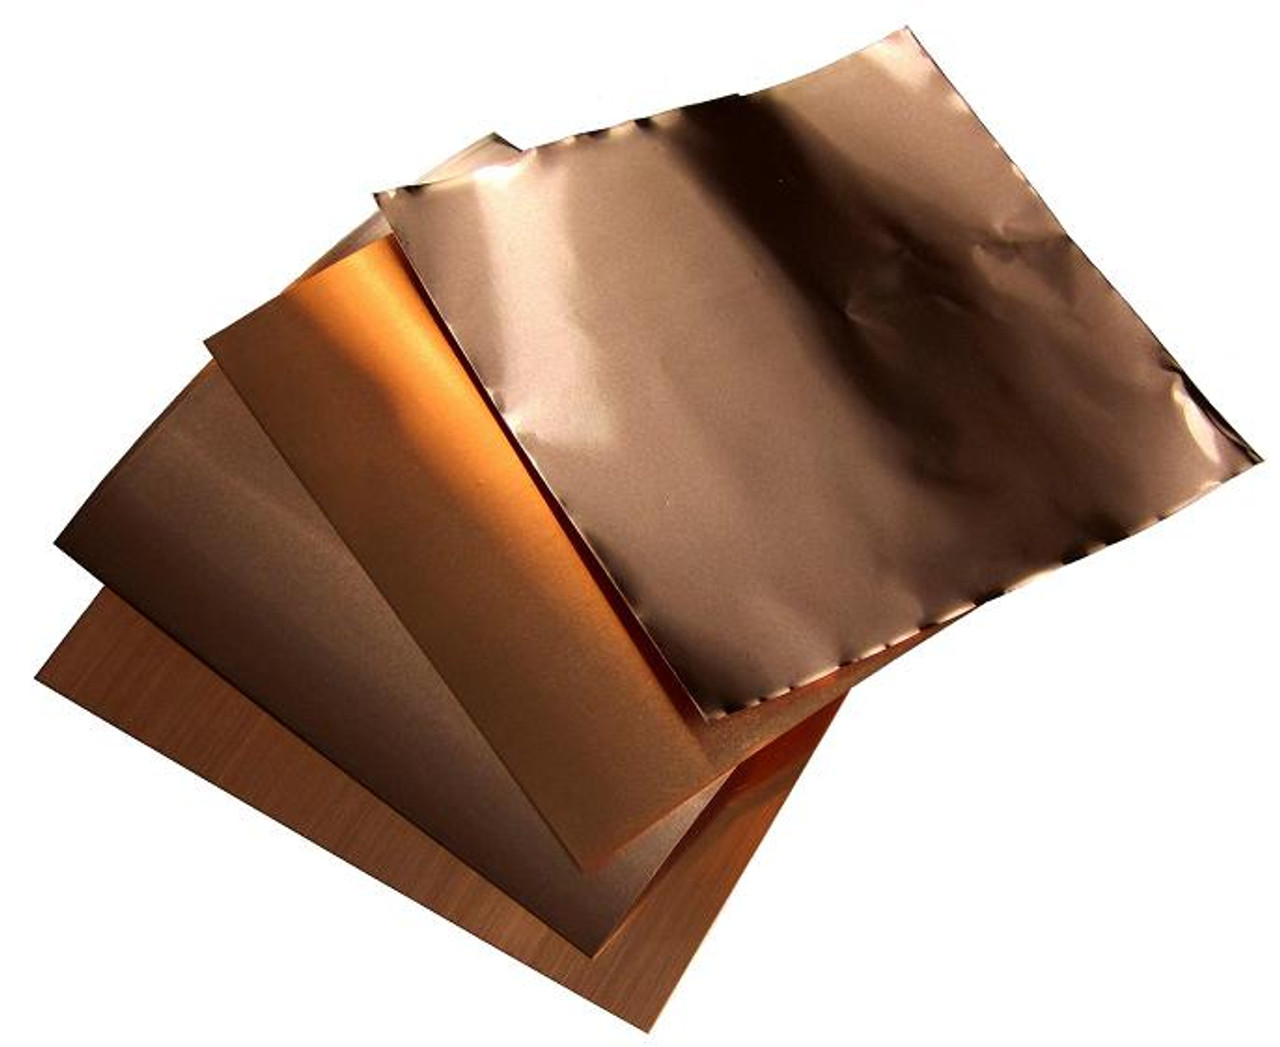 6 X 6 Copper Foil Sampler #1B Includes 1, 1.4, 3 & 5 mil (4 sheets) |  Basic Copper